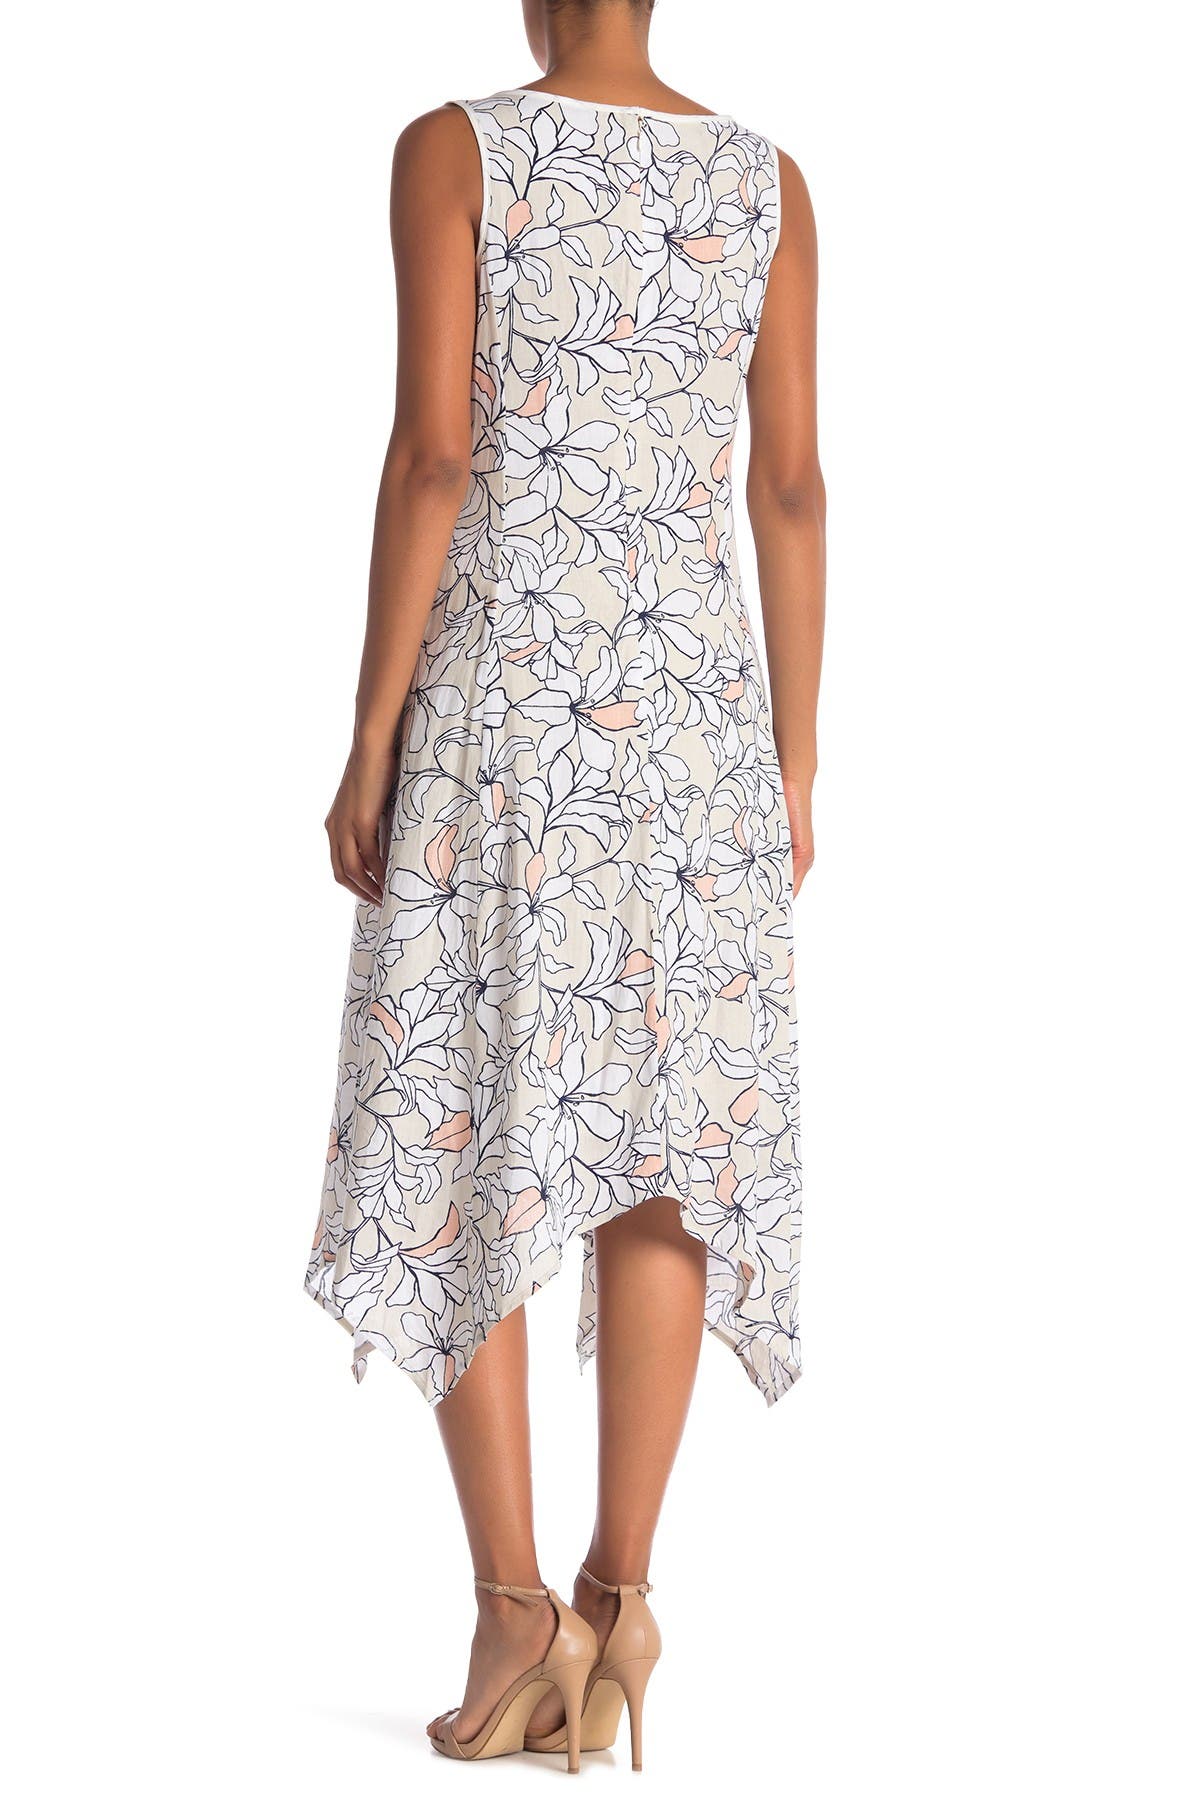 Jones New York | Sleeveless Linen Blend Floral Handkerchief Dress ...